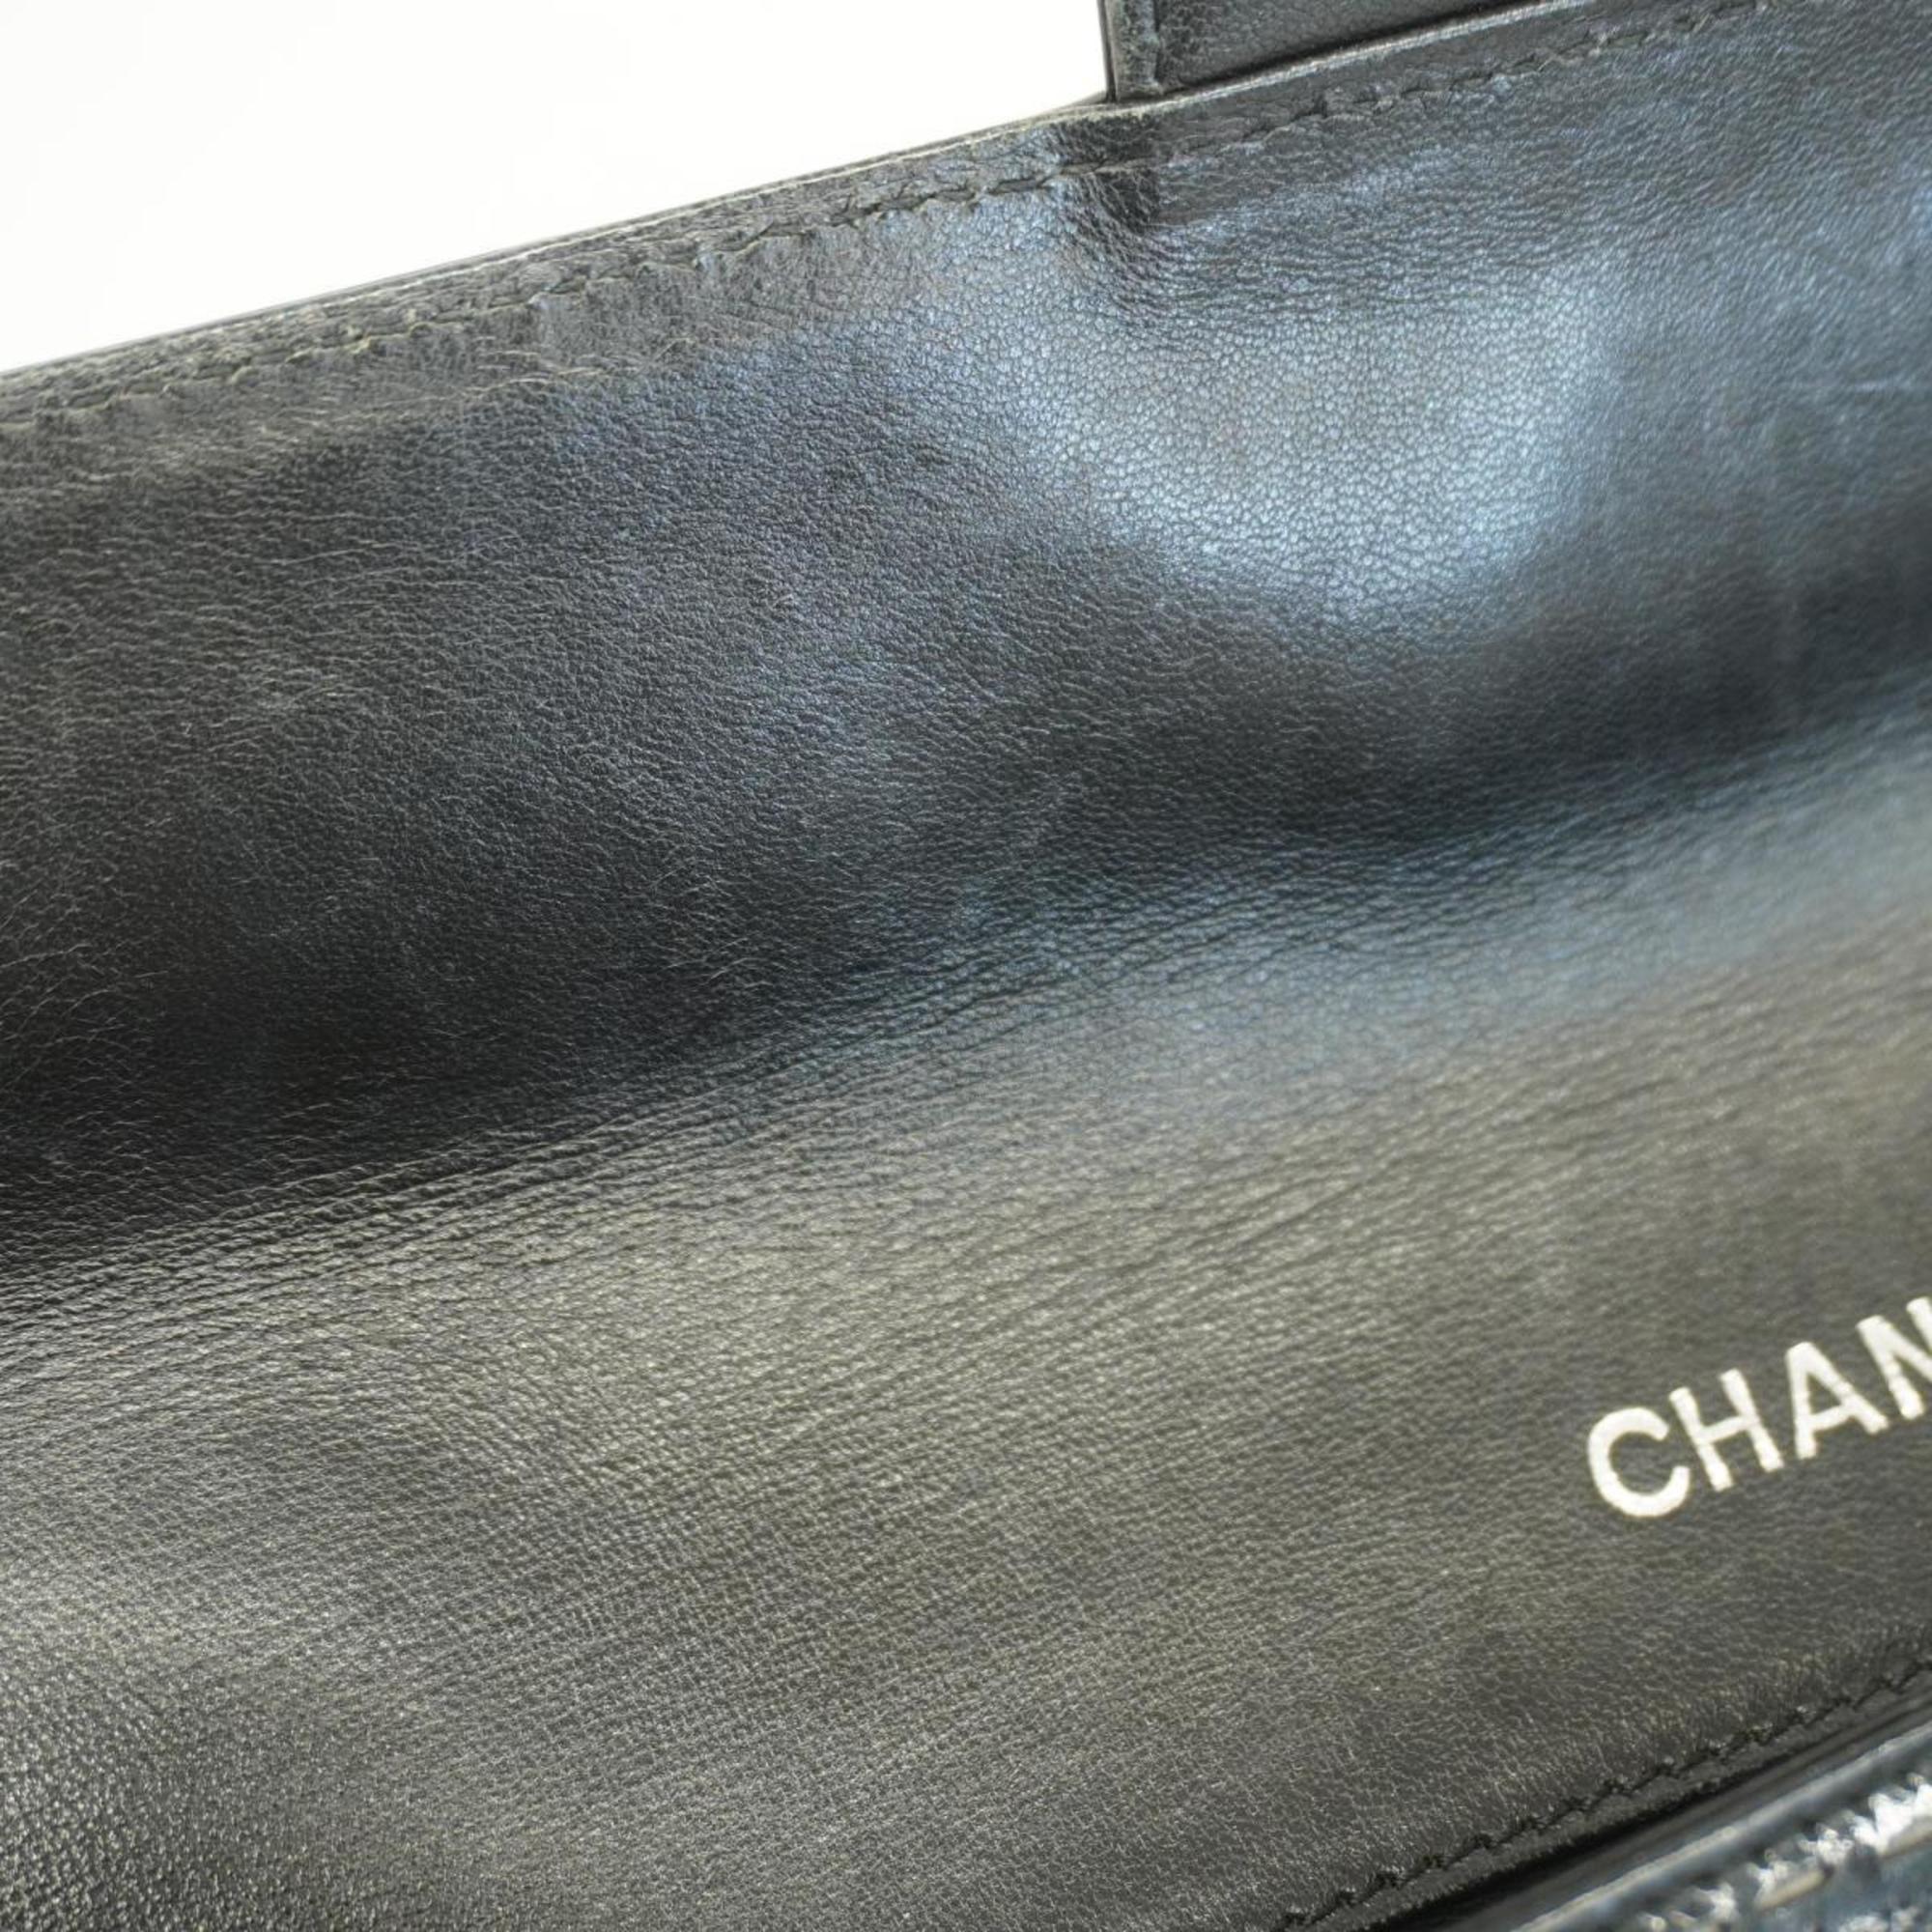 シャネル(Chanel) シャネル ショルダーバッグ カメリア チェーンショルダー パテントレザー ブラック   レディース